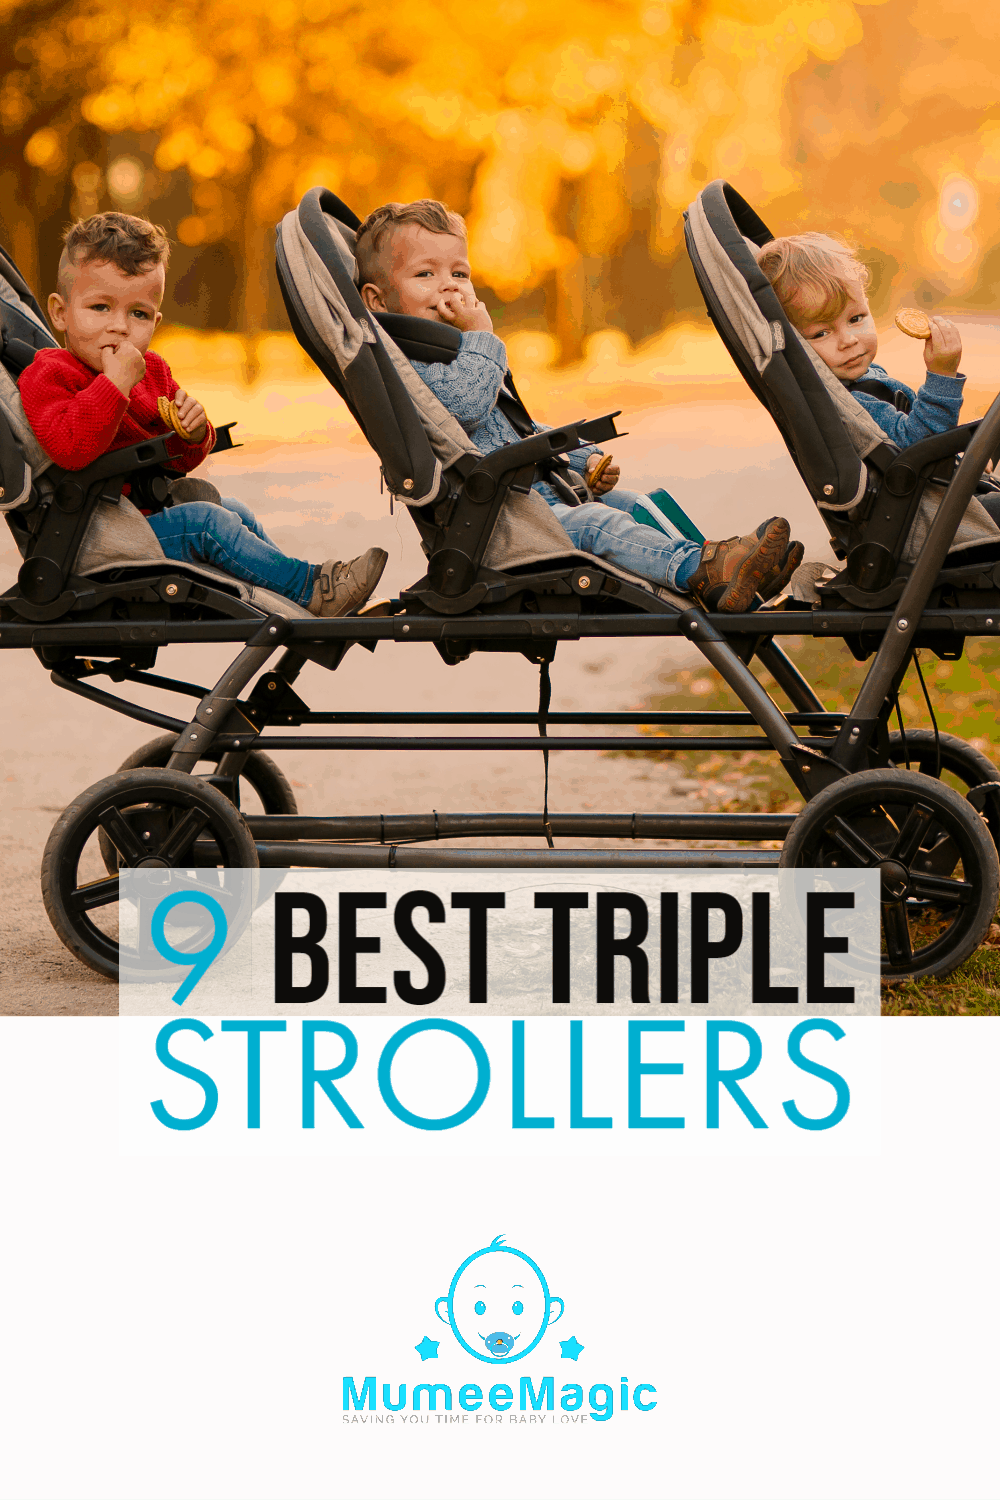 Triple stroller